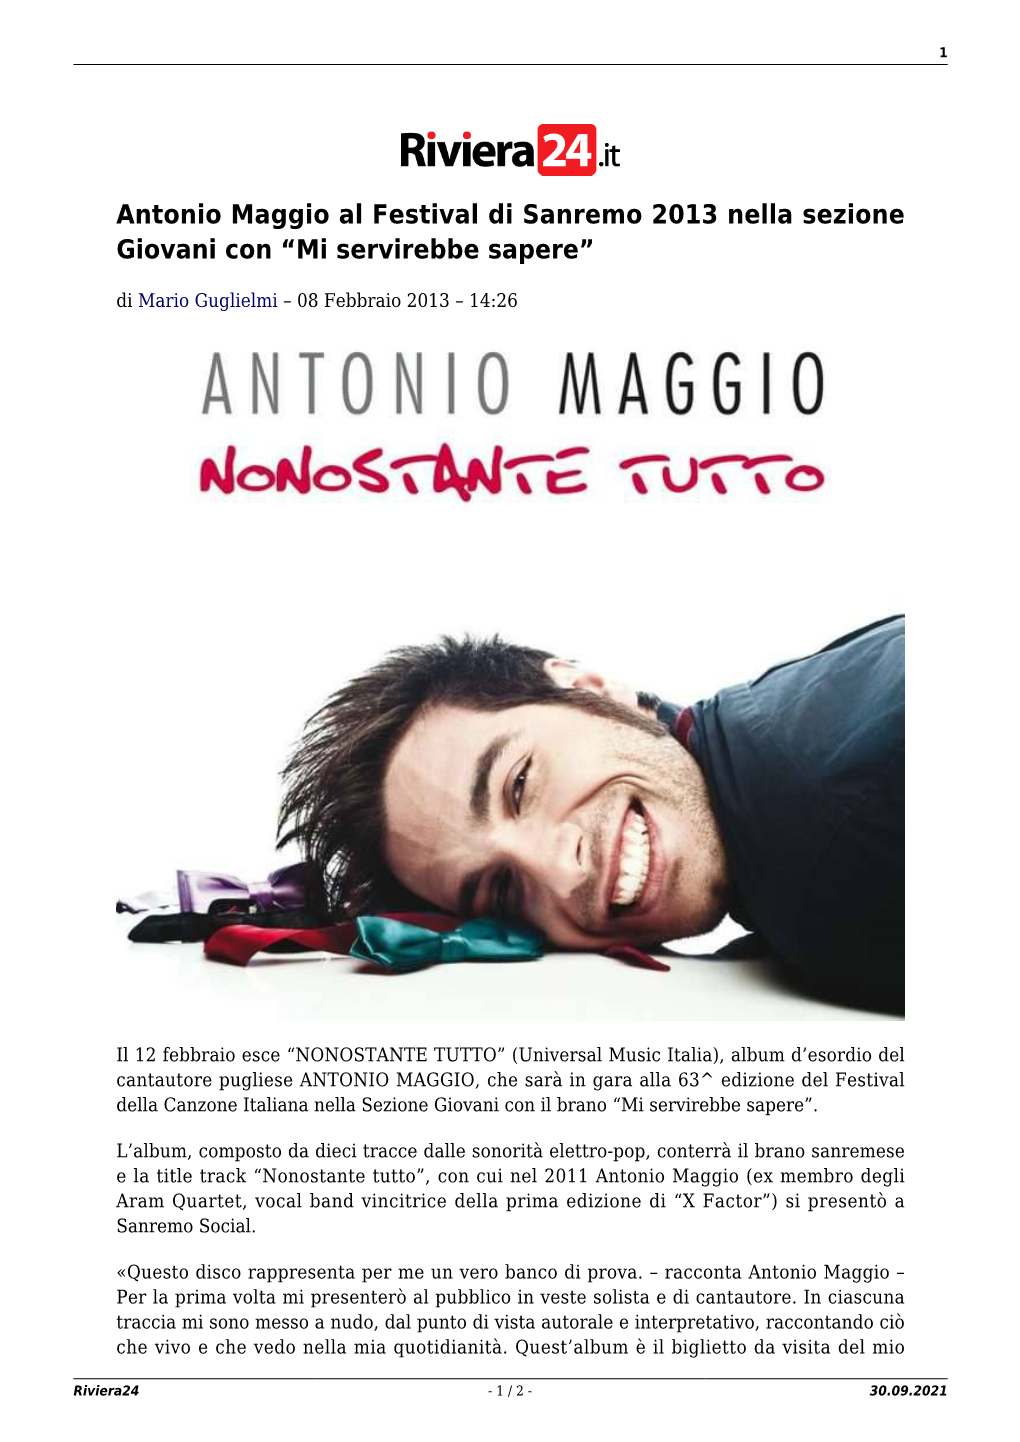 Antonio Maggio Al Festival Di Sanremo 2013 Nella Sezione Giovani Con “Mi Servirebbe Sapere”